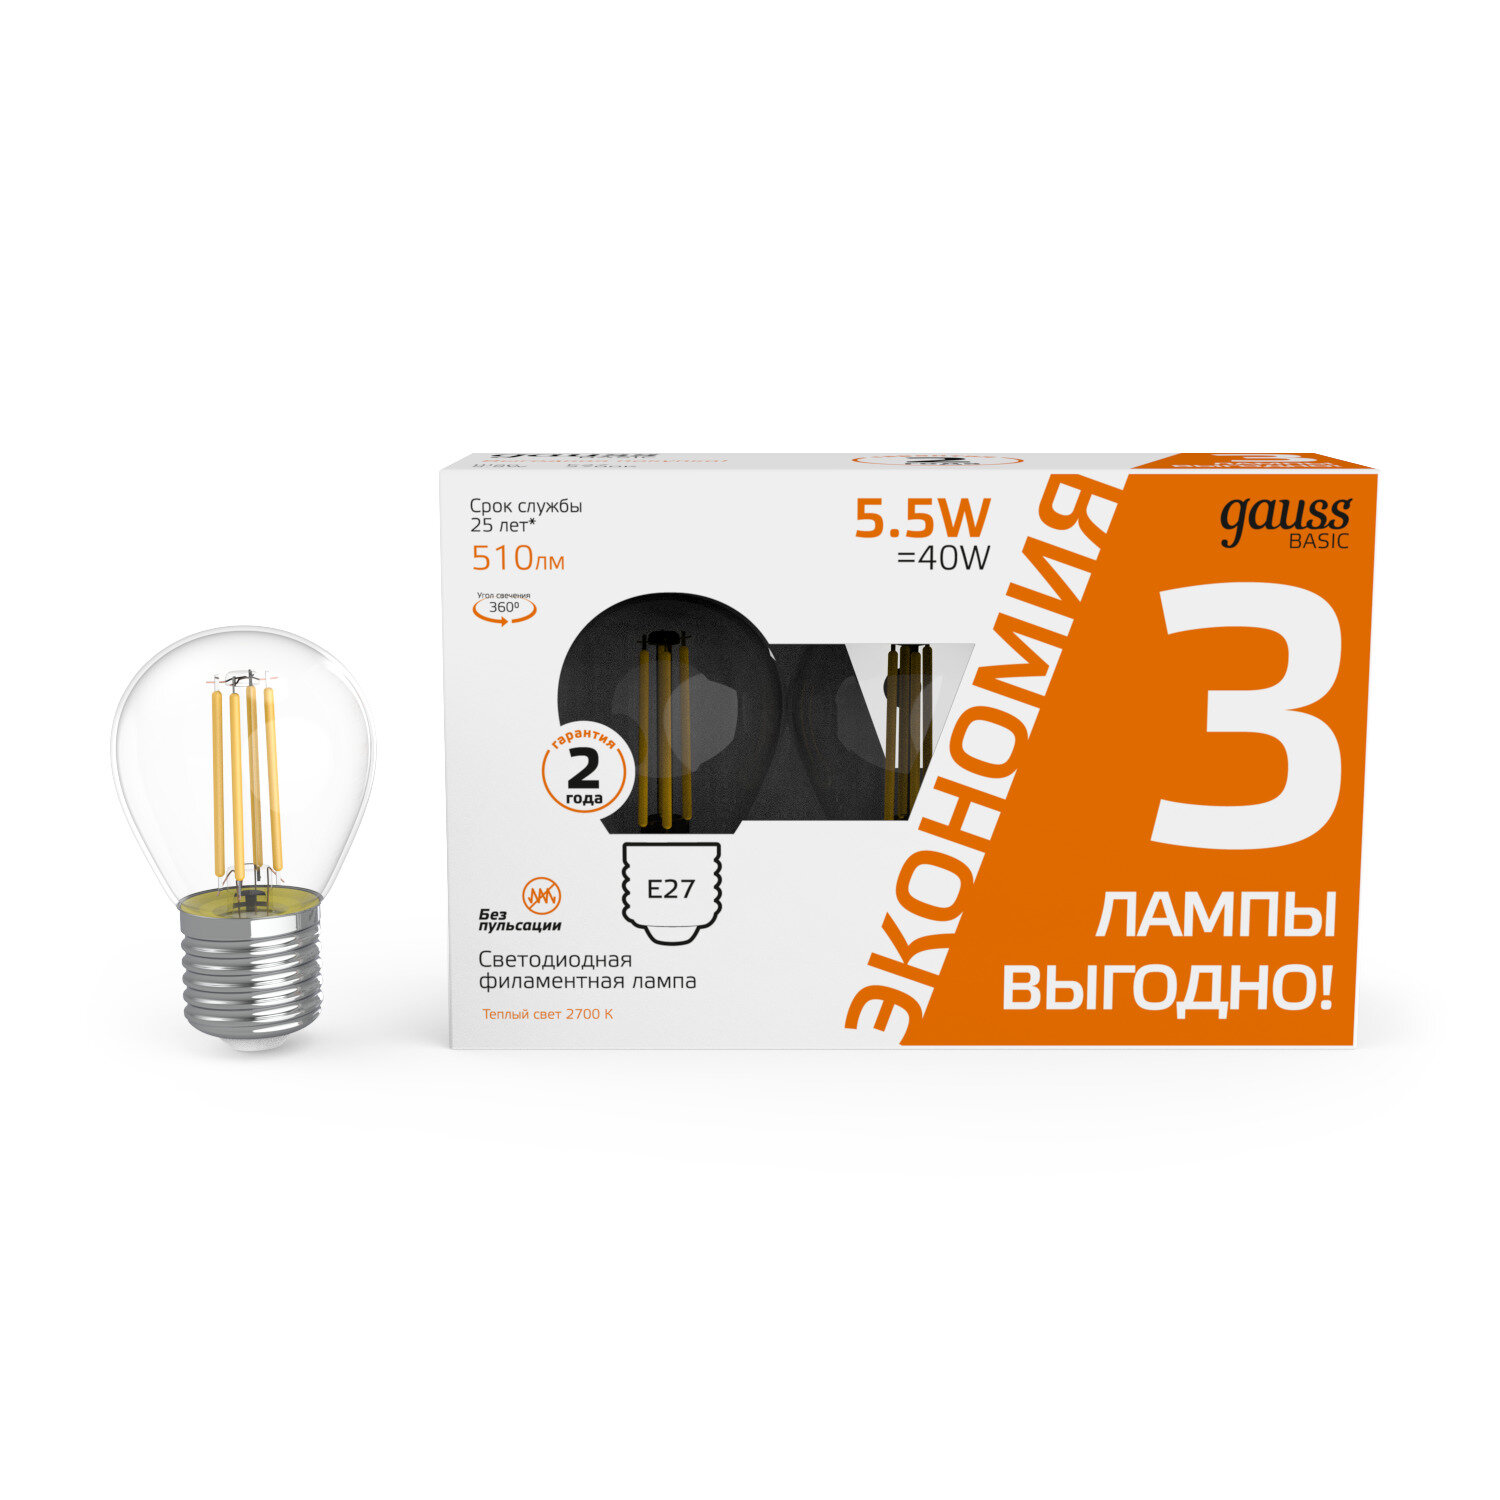 Лампа светодиодная gauss Лампа Gauss Basic Filament Шар 55W 510lm 2700К Е27 LED (3 лампы в упаковке) 1/20 E27